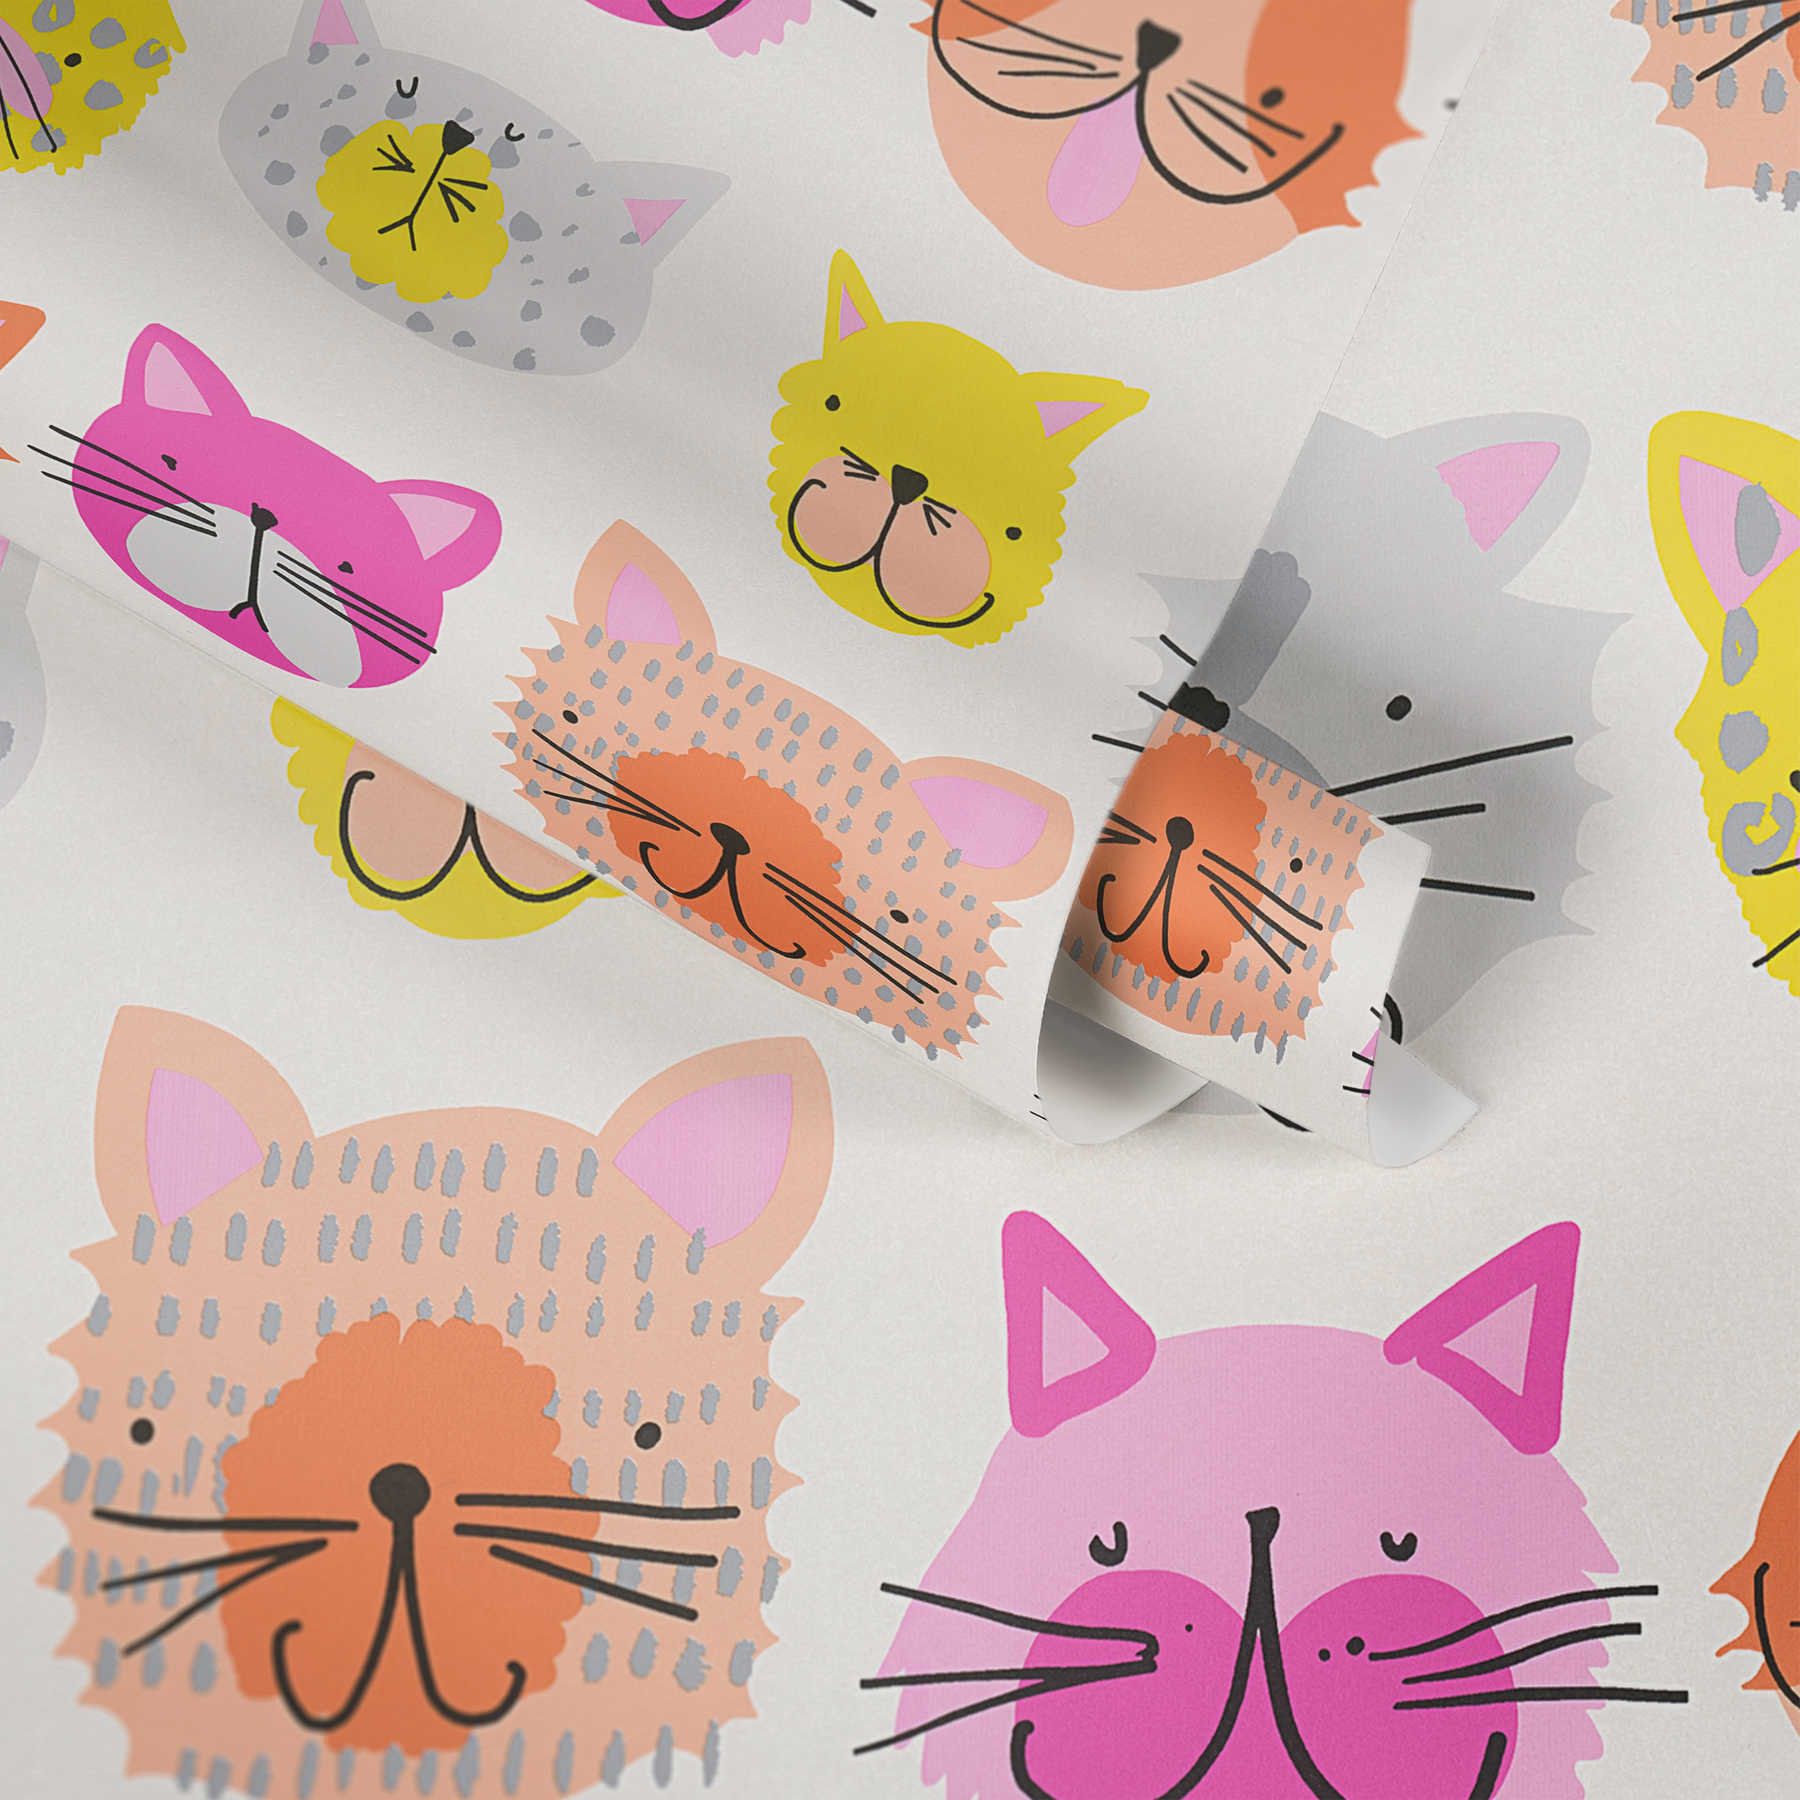             Kleurrijk Kattenbehang in Komische Stijl voor Kinderkamer - Roze, Geel
        